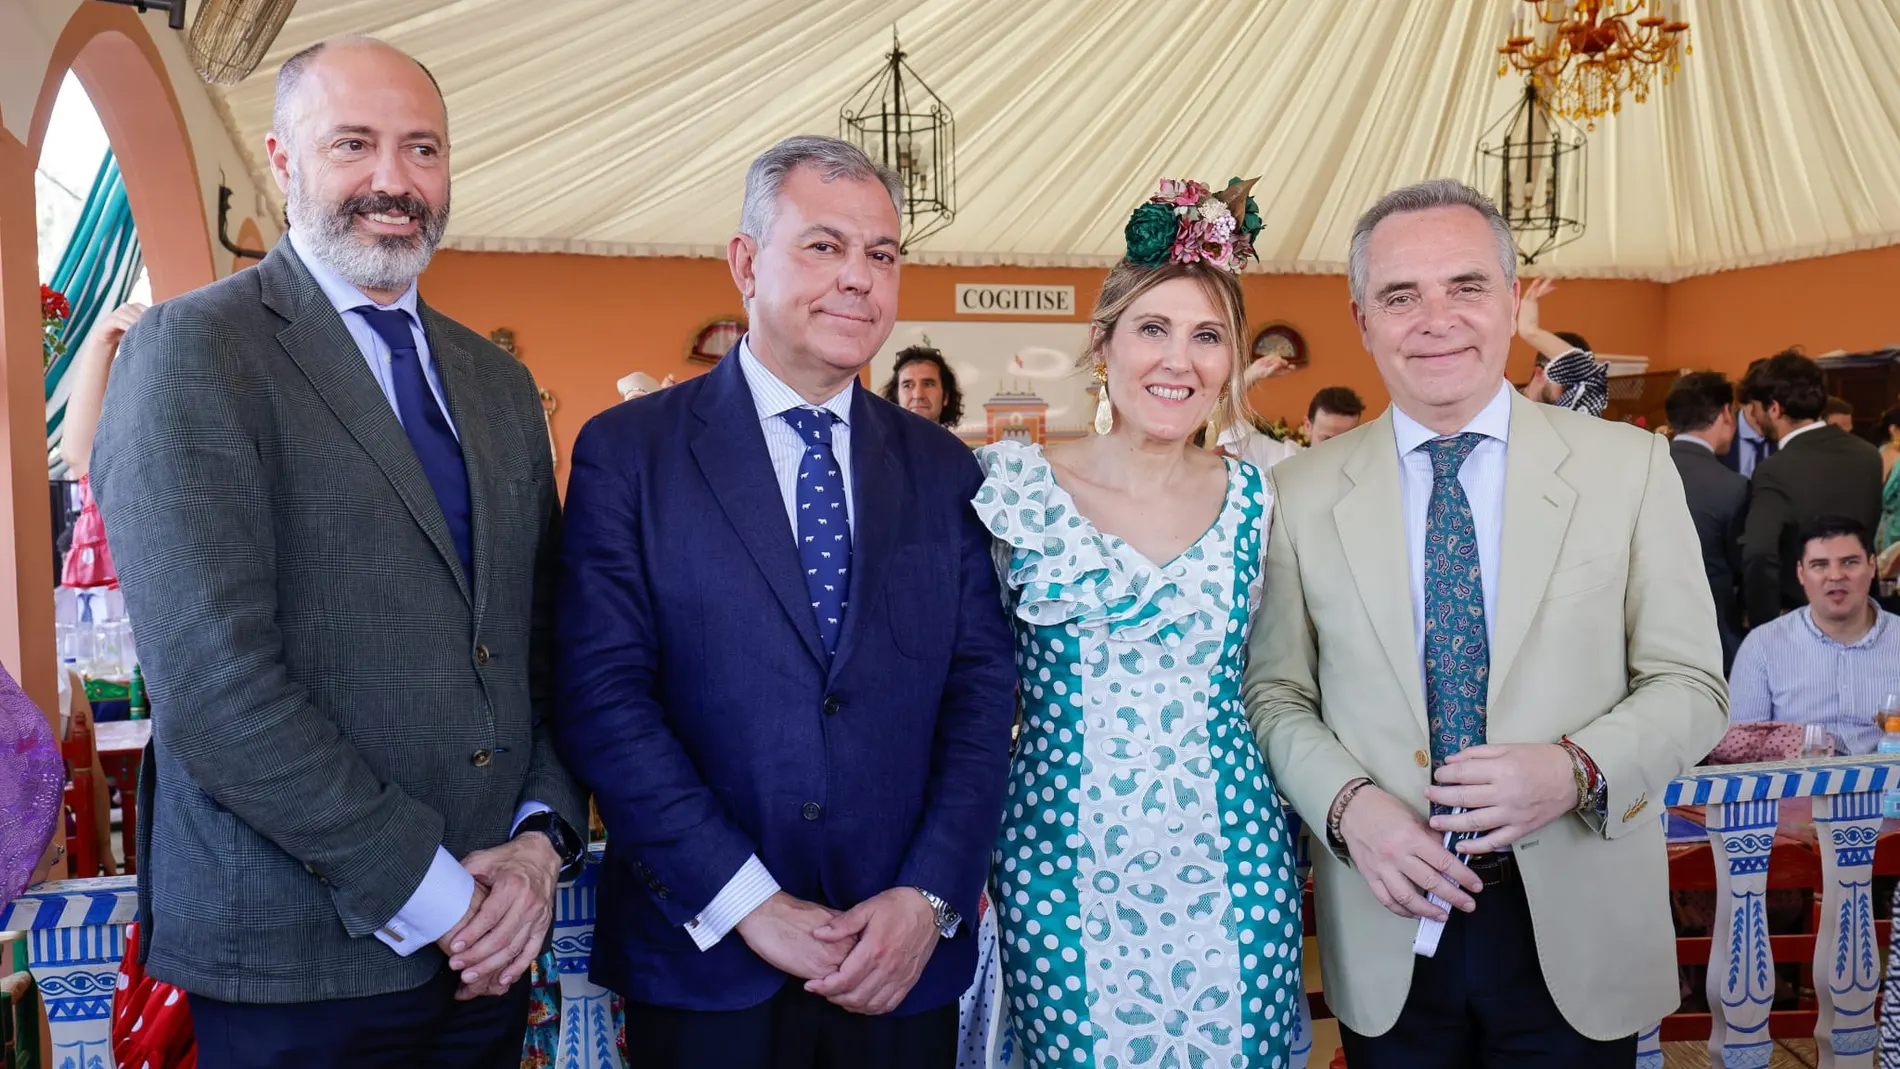 La decana, Ana Jáuregui, acompañada del alcalde de Sevilla, Antonio Sanz, y más autoridades en la caseta de Cogitise